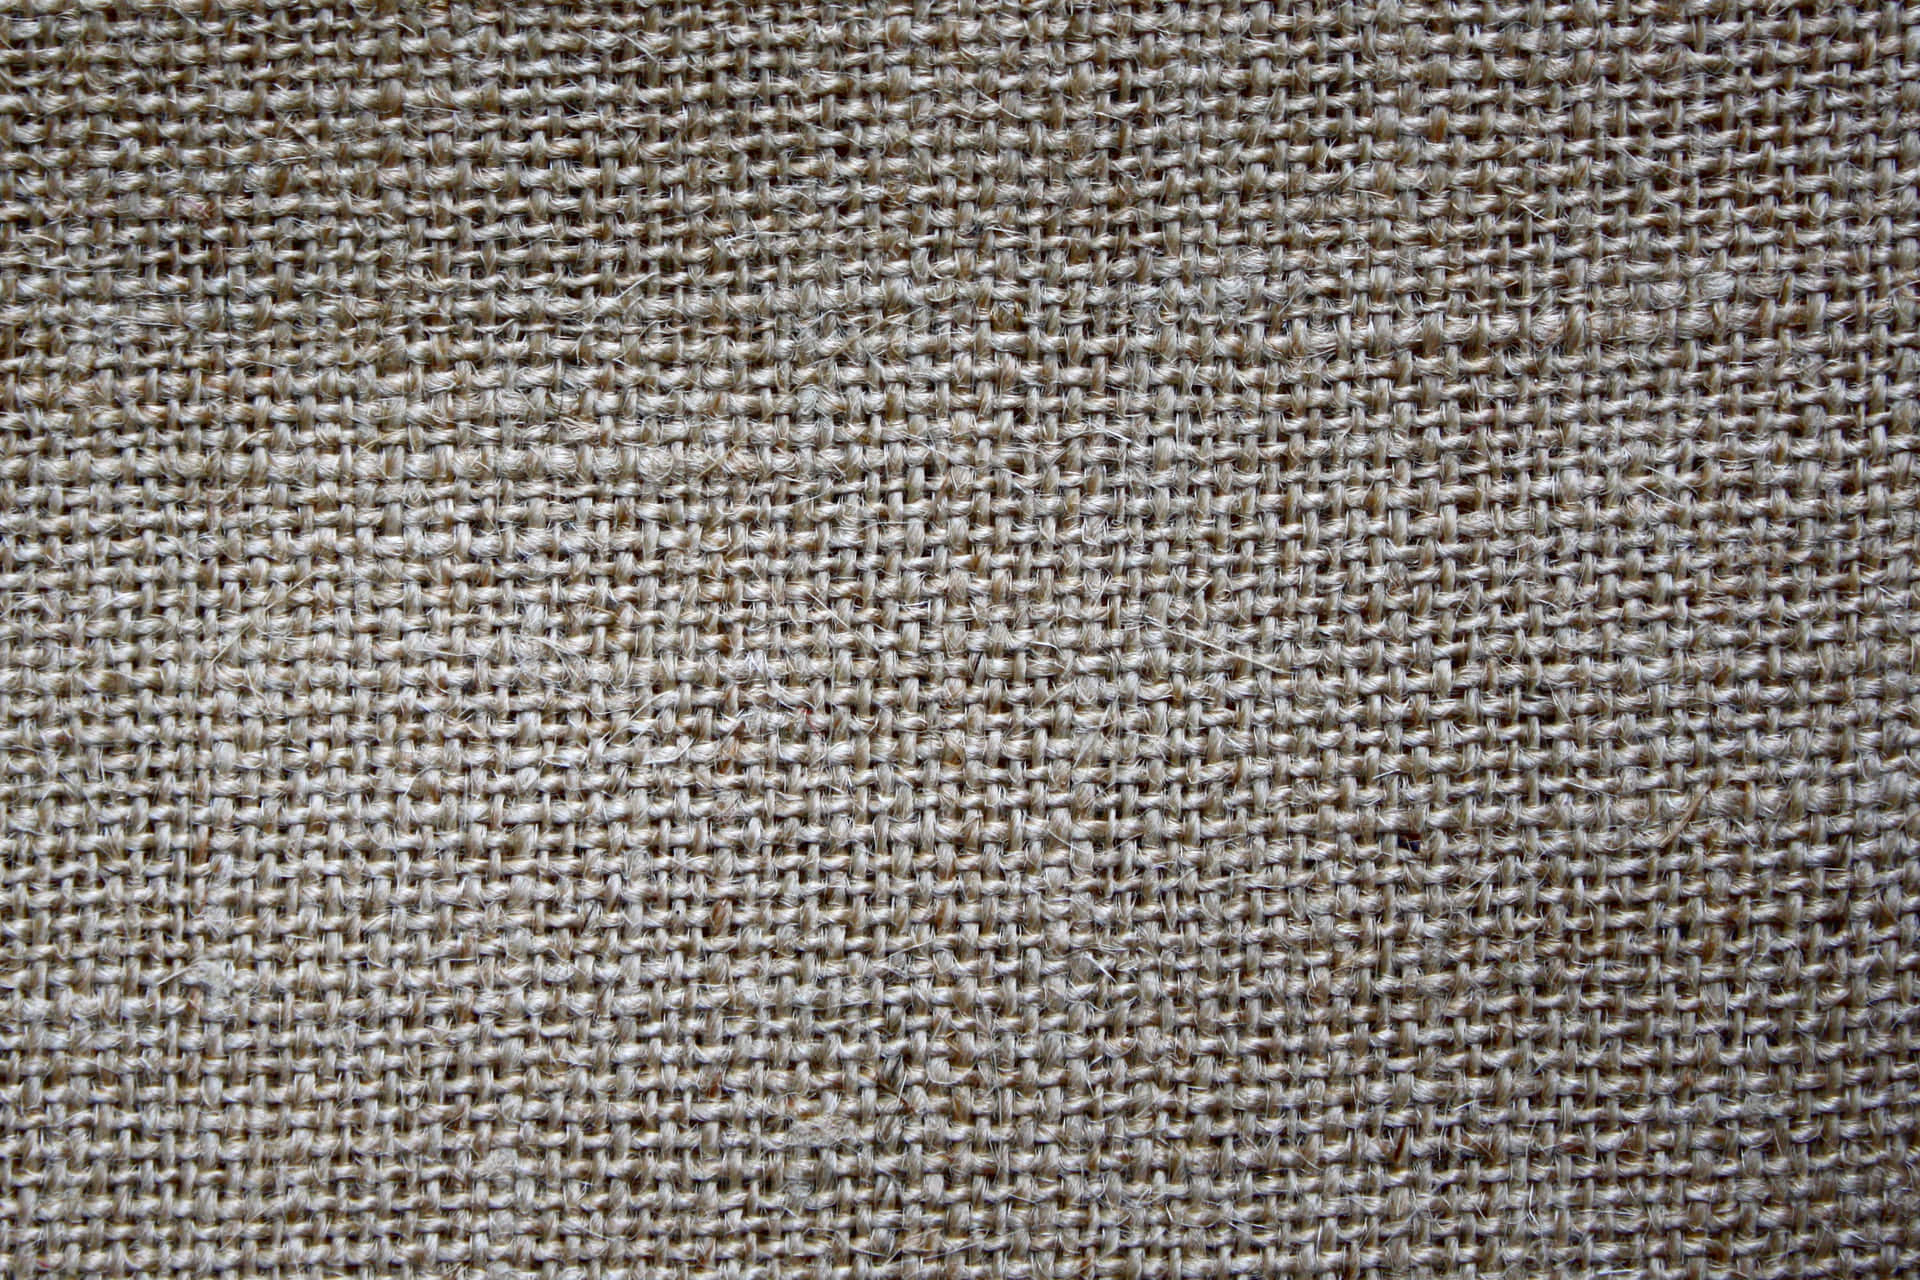 A Close Up Of A Beige Fabric